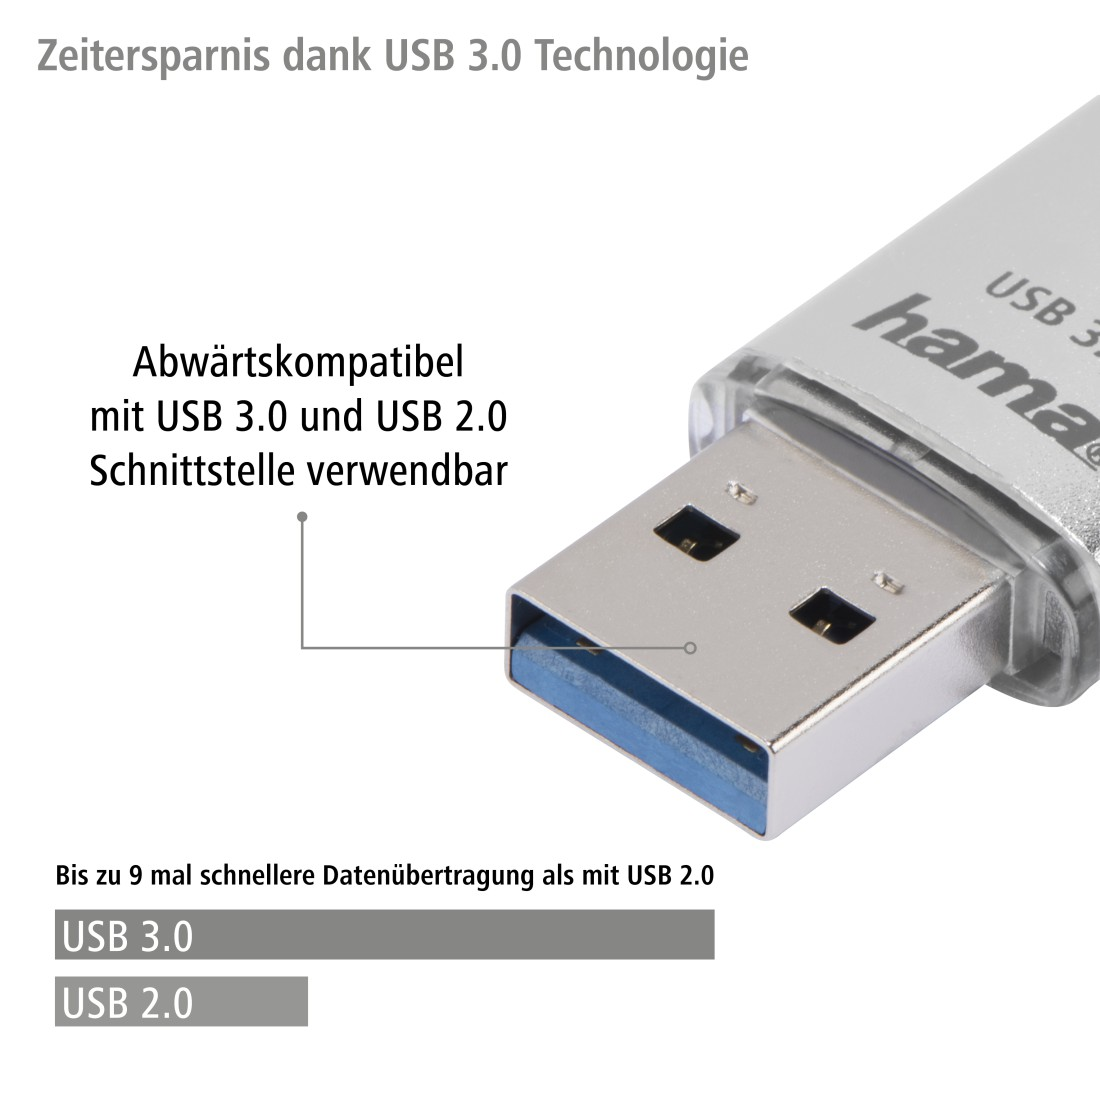 HAMA MB/s, USB-Stick, C-Laeta 16 40 GB, Silber